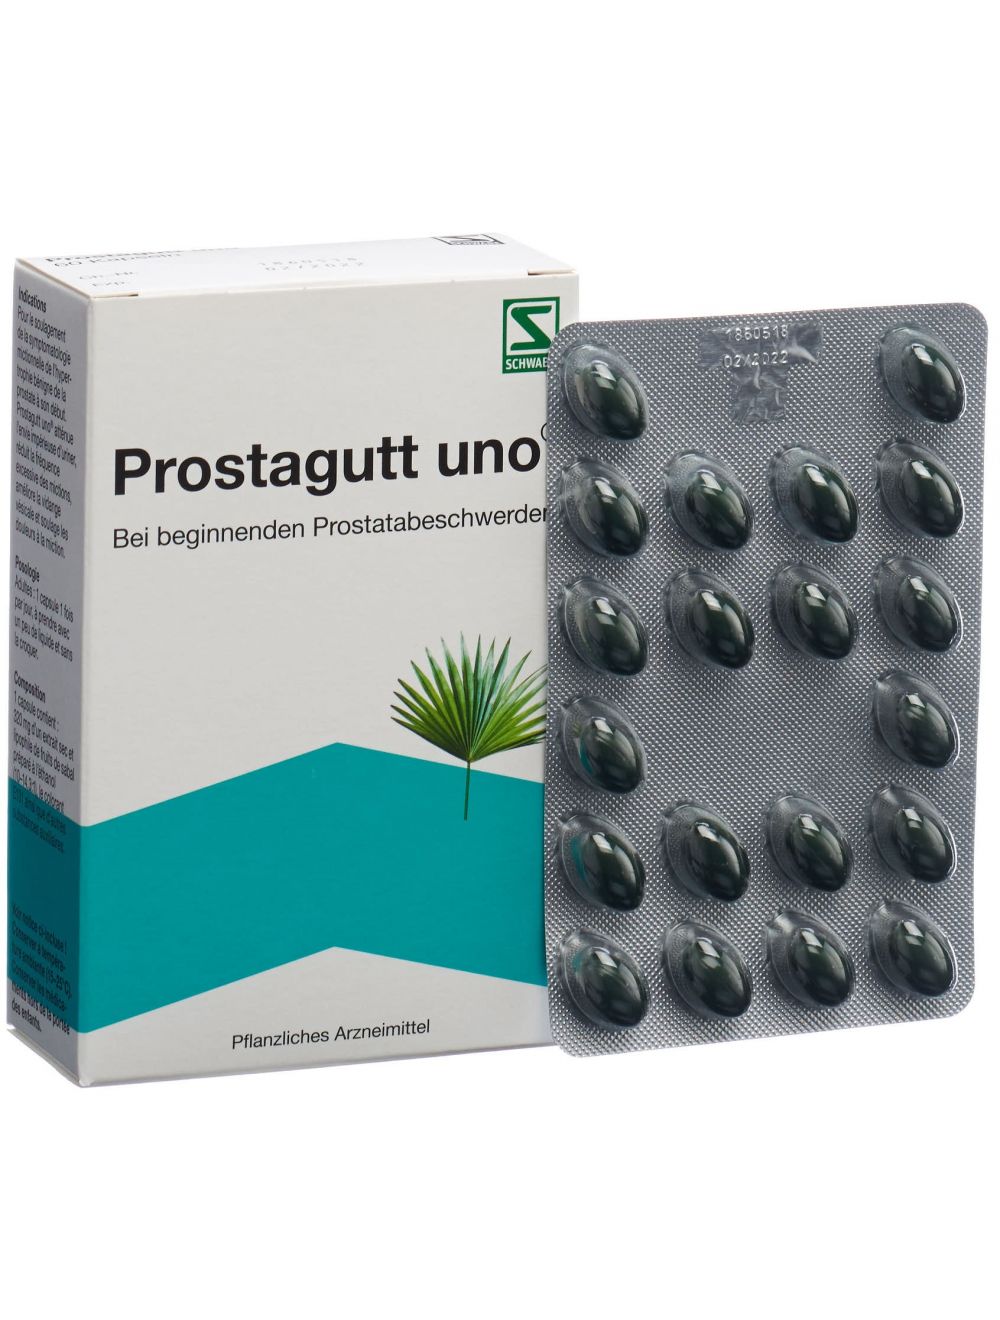 medicament prostate sans ordonnance en pharmacie)